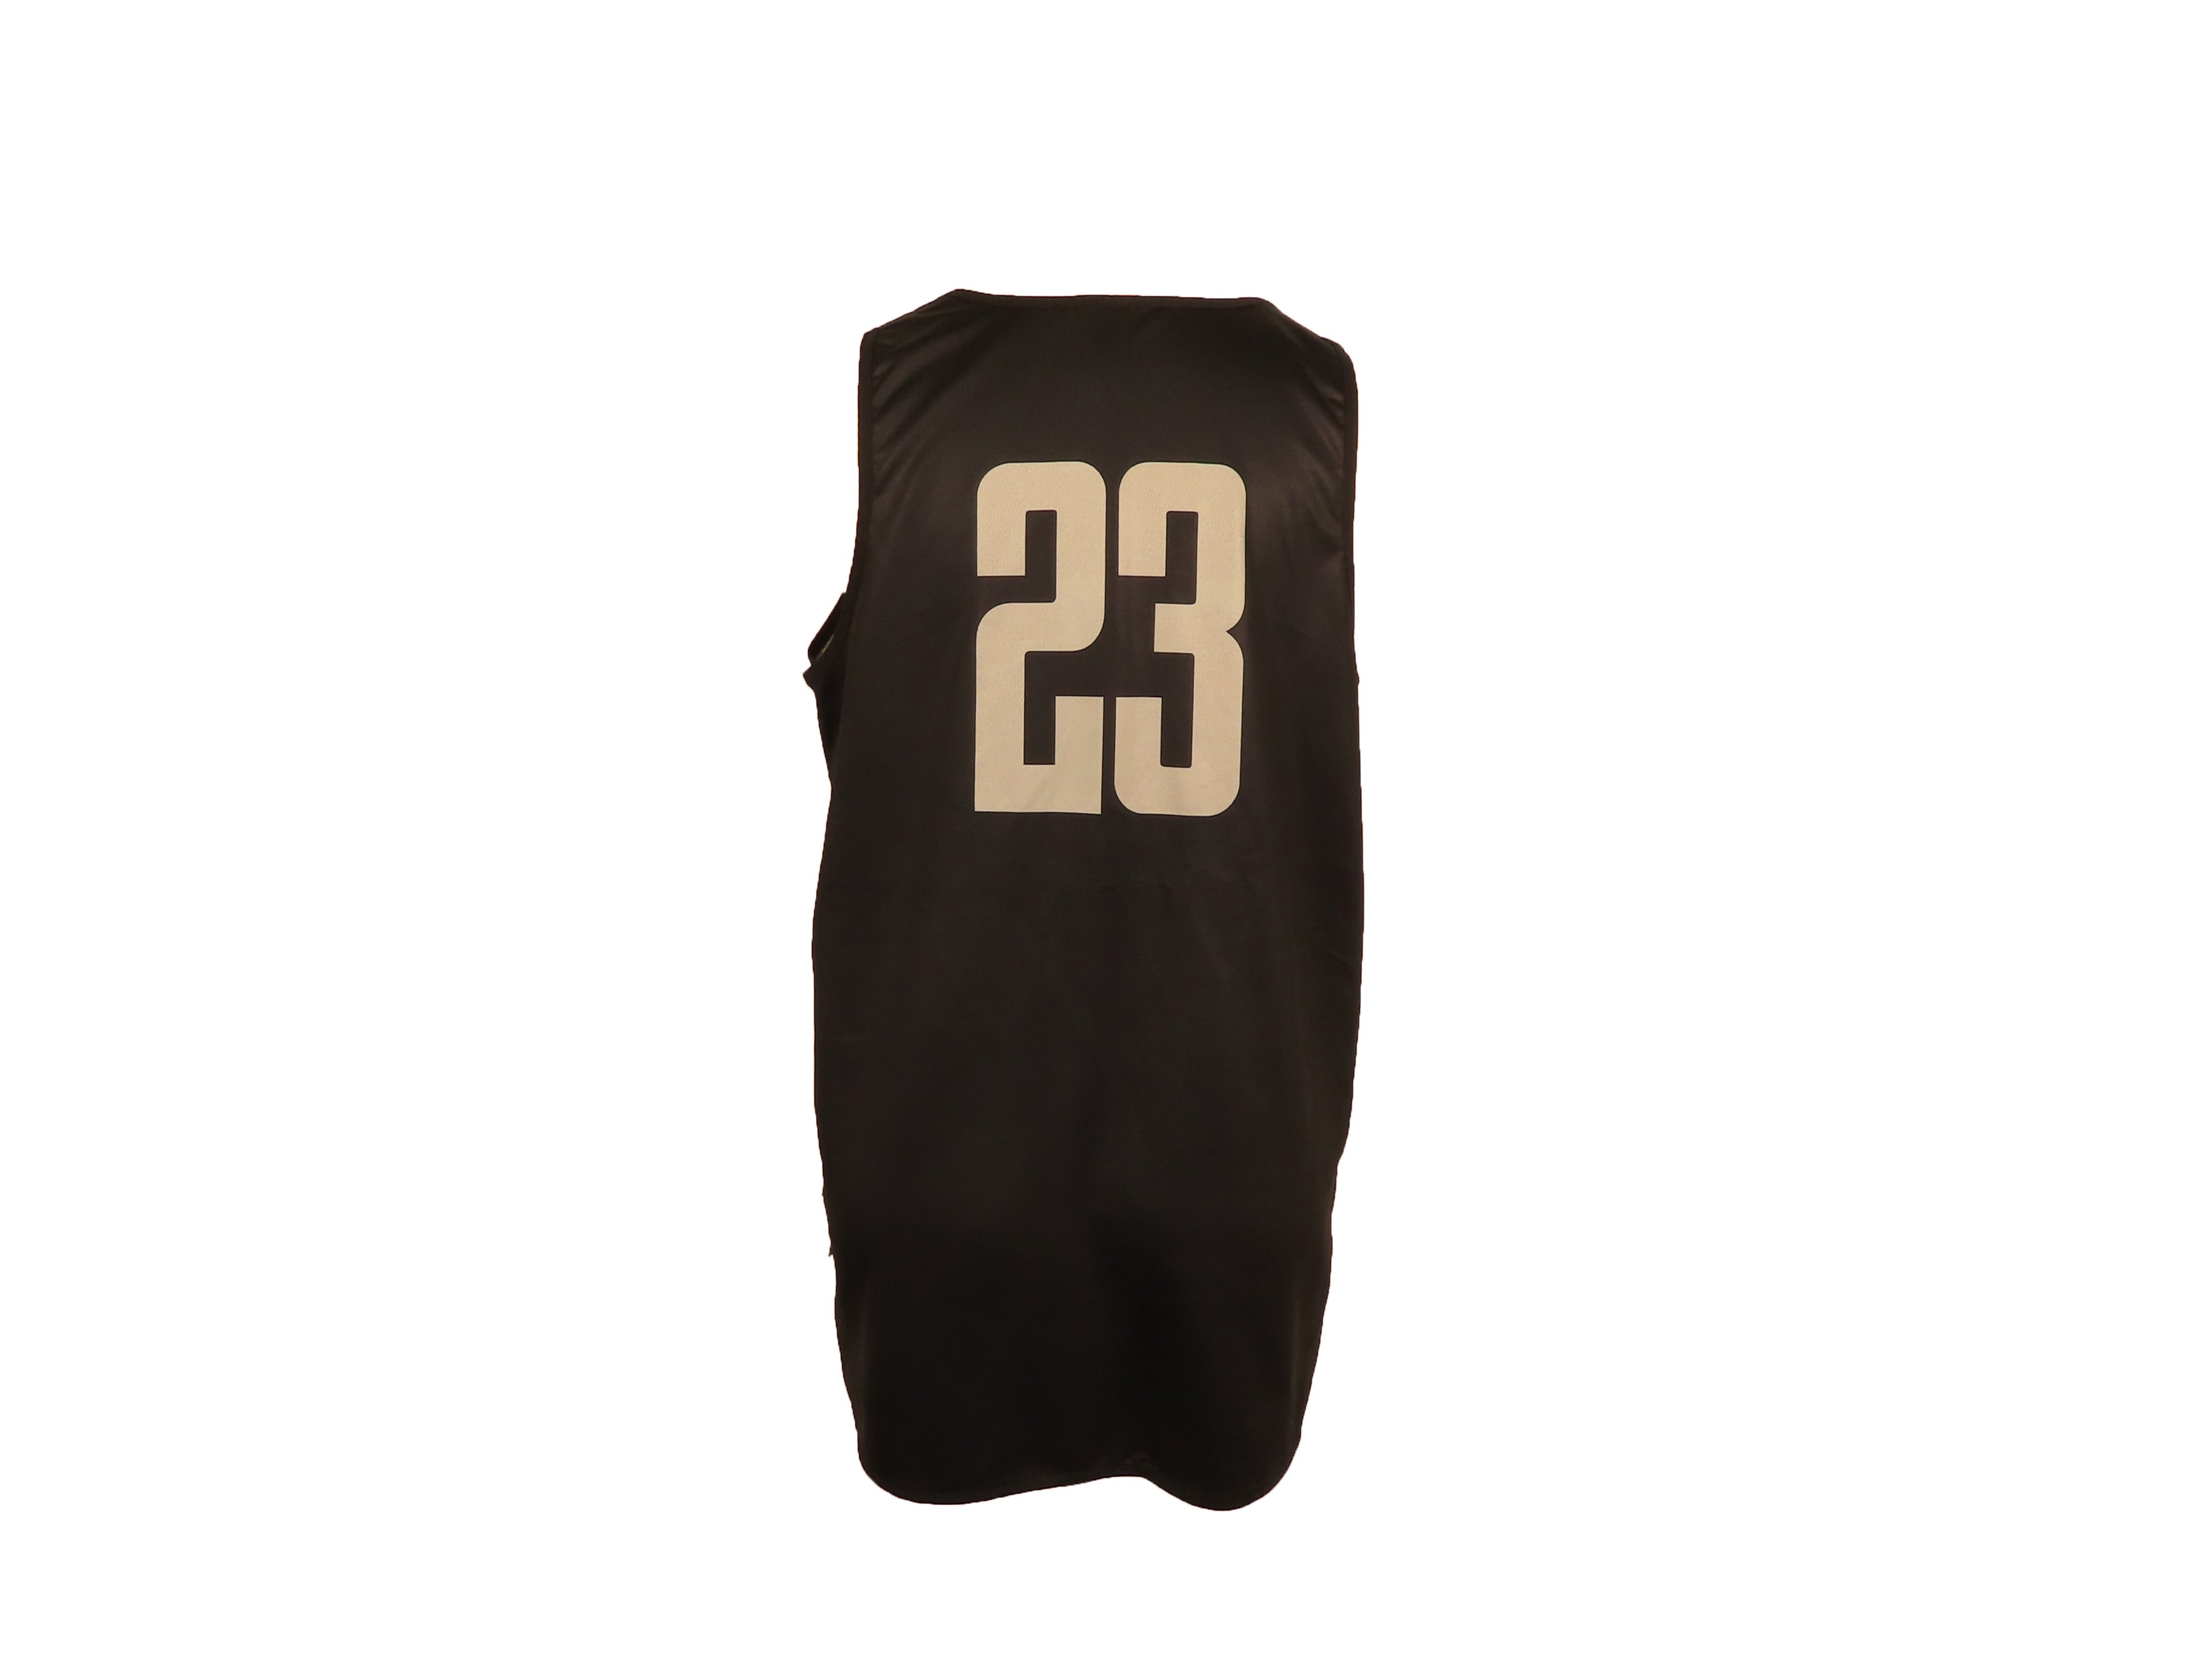 Nike Gray & Black Reversible Women's Basketball #23 Jersey Size L